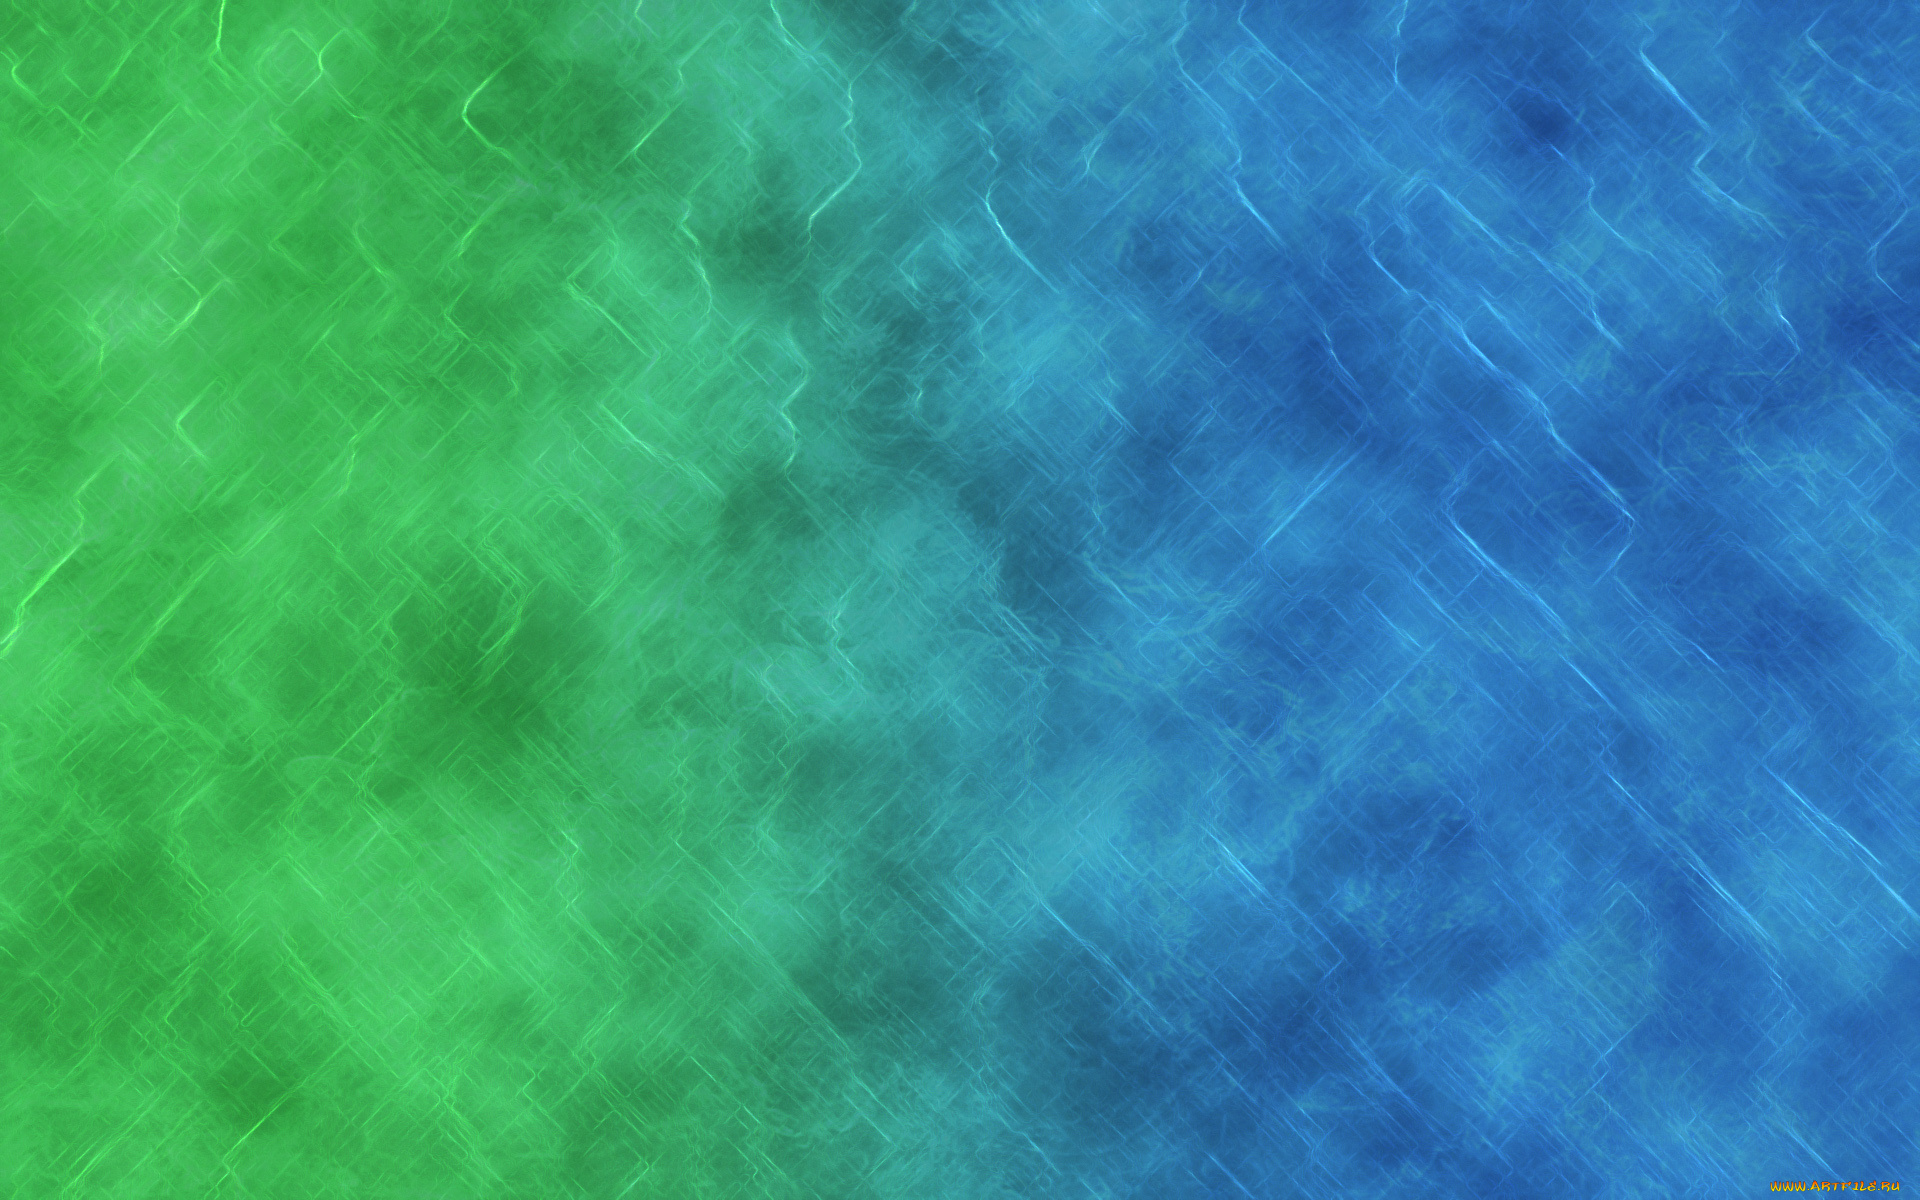 текстура, разное, текстуры, вонлнистый, зеленый, синий, голубой